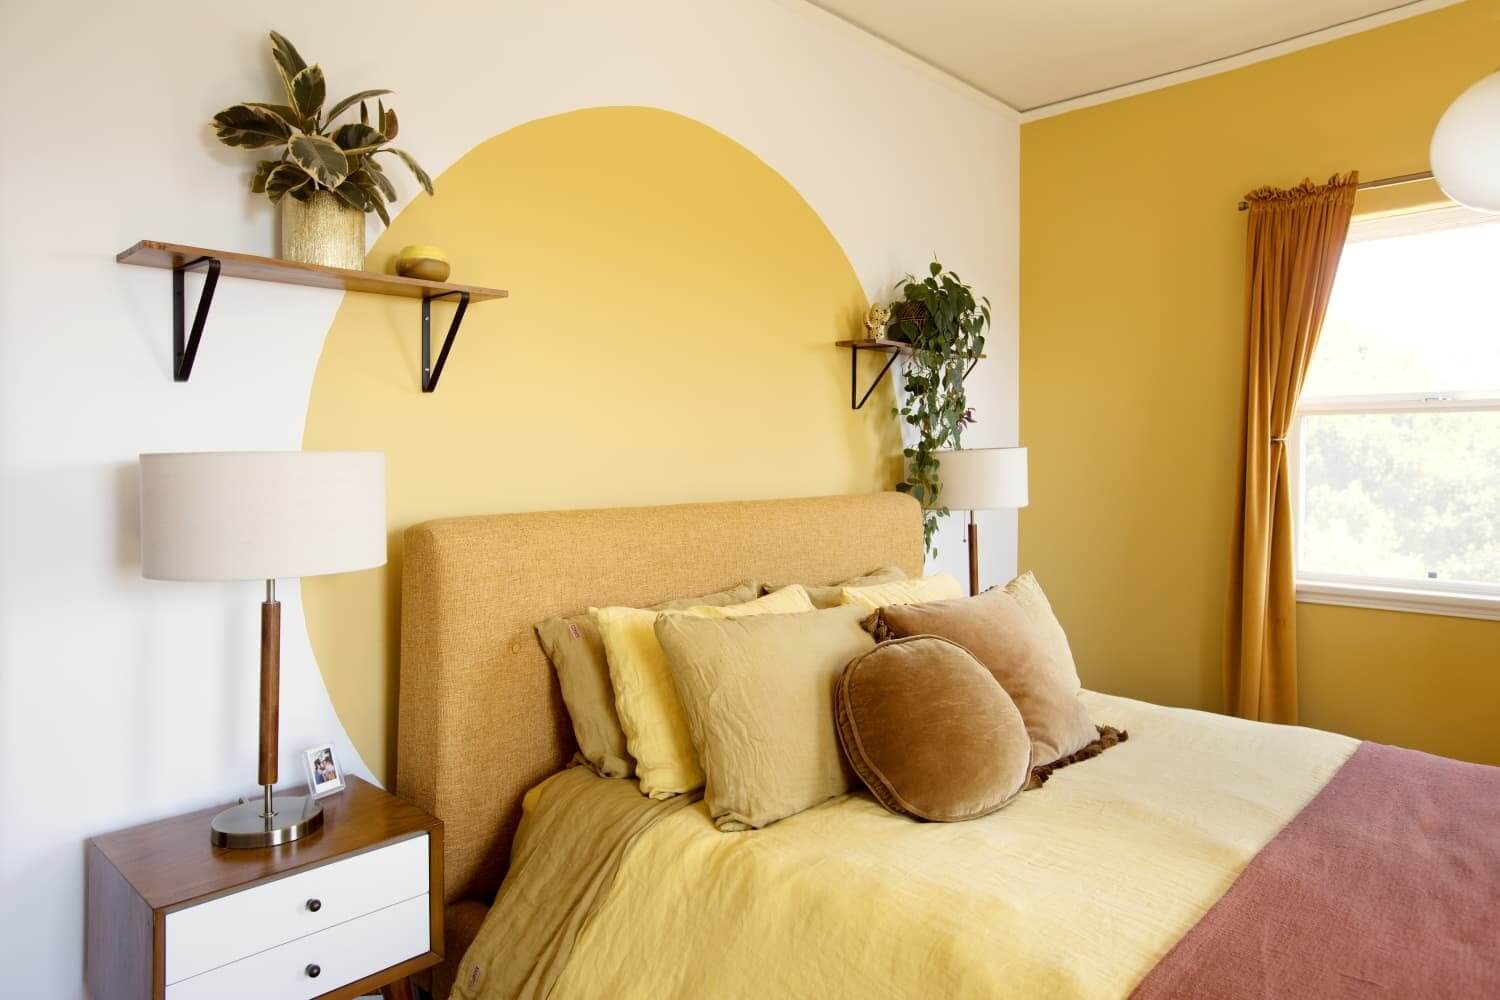 Phòng ngủ Pastel tone màu vàng